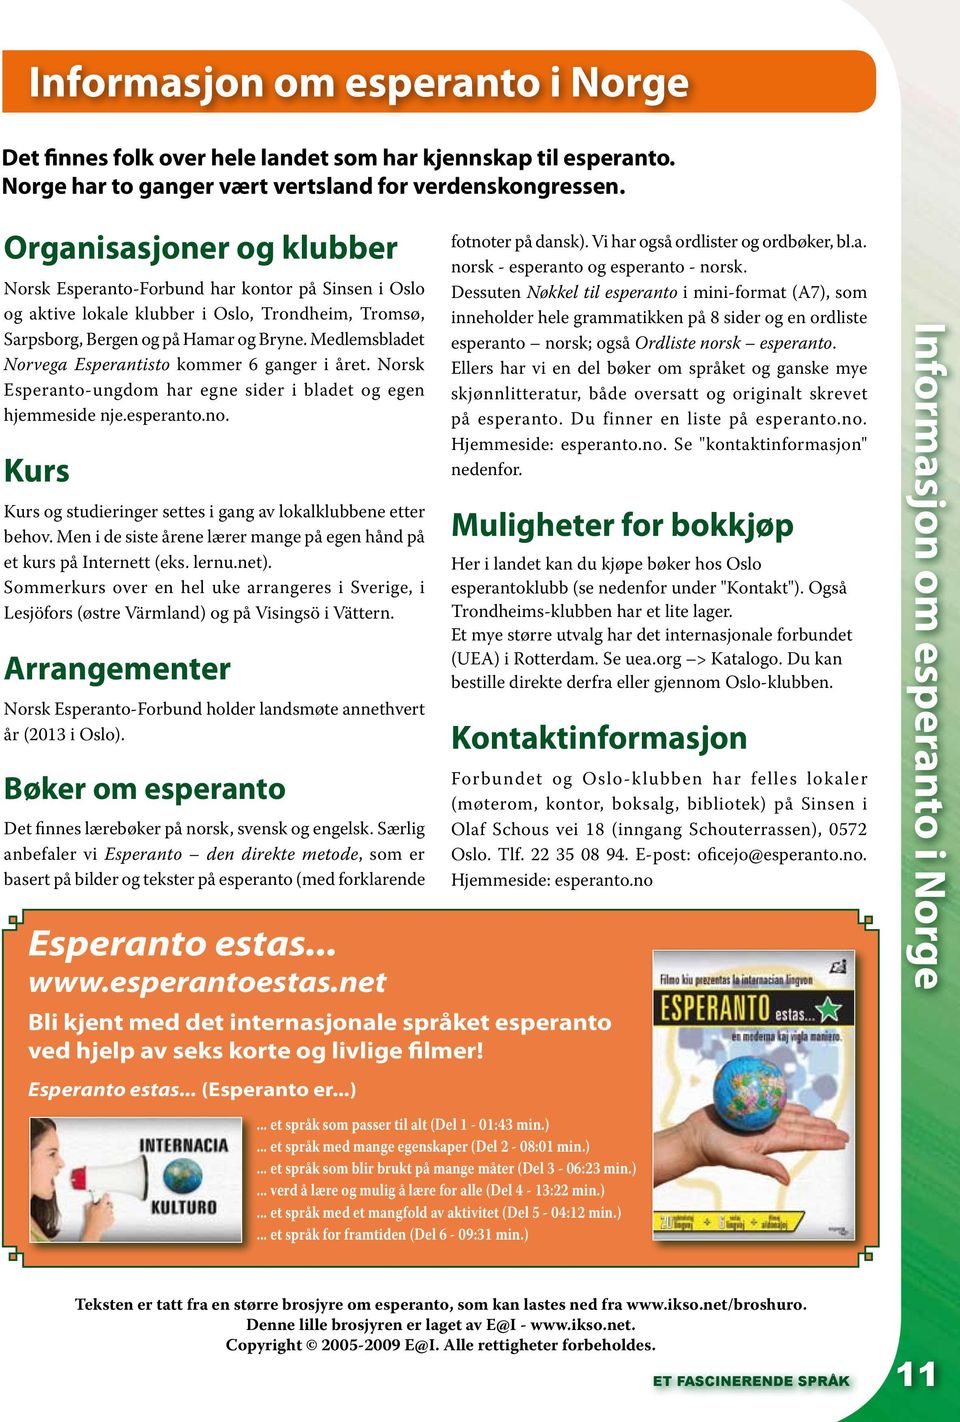 Medlemsbladet Norvega Esperantisto kommer 6 ganger i året. Norsk Esperanto-ungdom har egne sider i bladet og egen hjemmeside nje.esperanto.no.